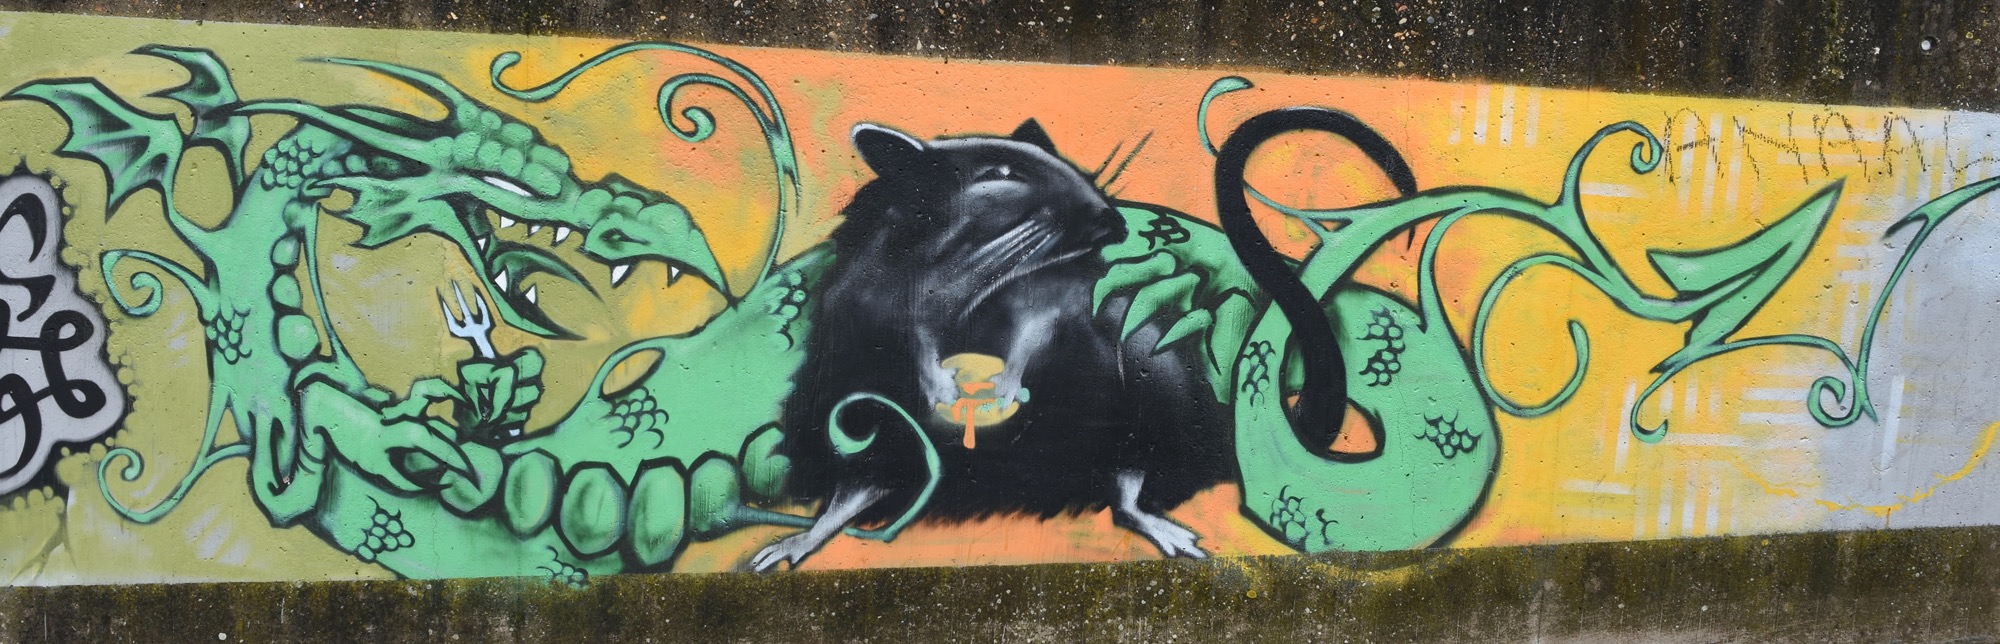 Graffiti 1168 Le rat et le dragon capturé par mrostf à Brugge Belgium